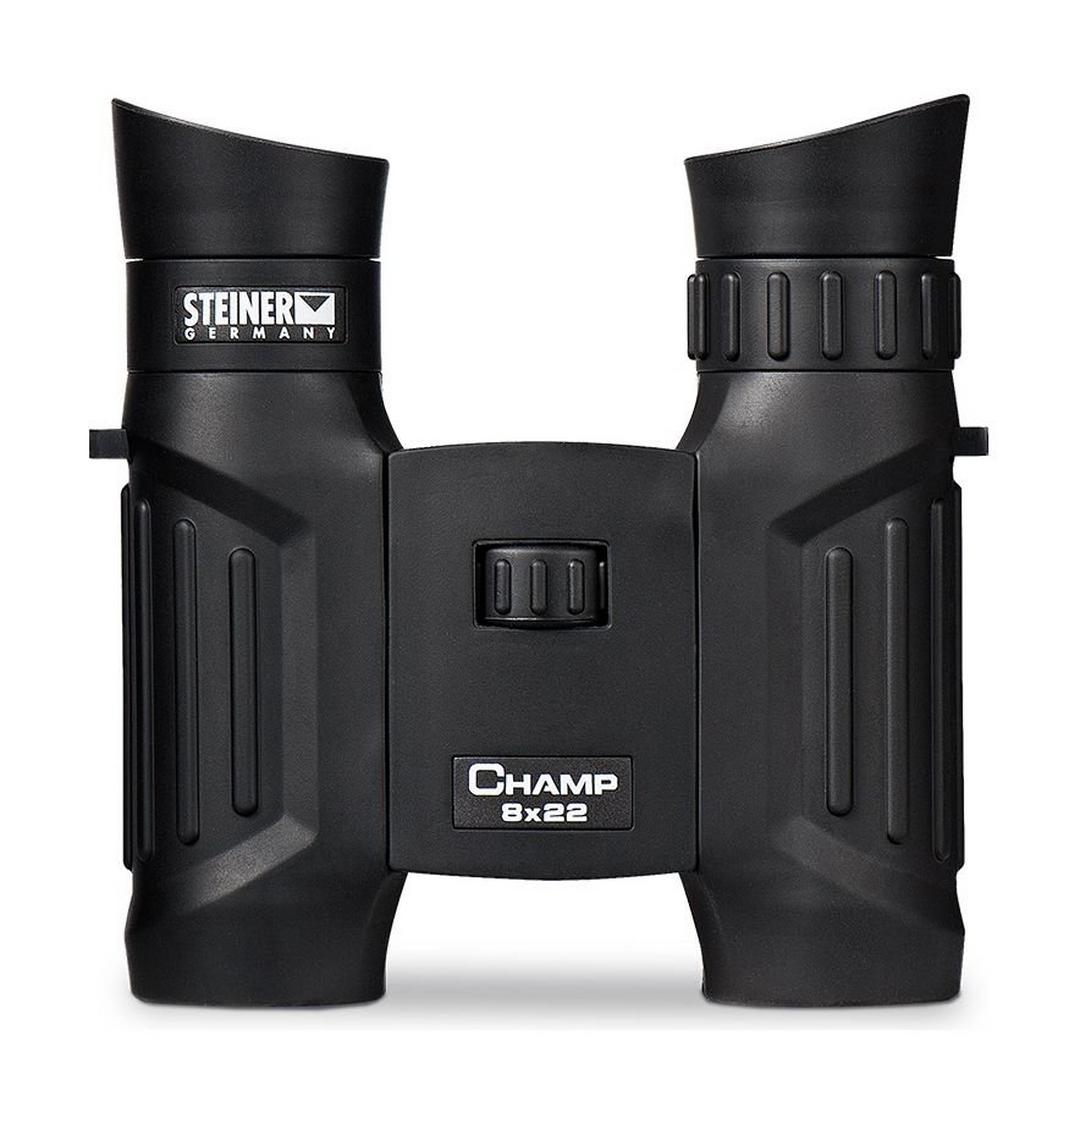 Steiner Champ 8x22 Compact Binocular – Black